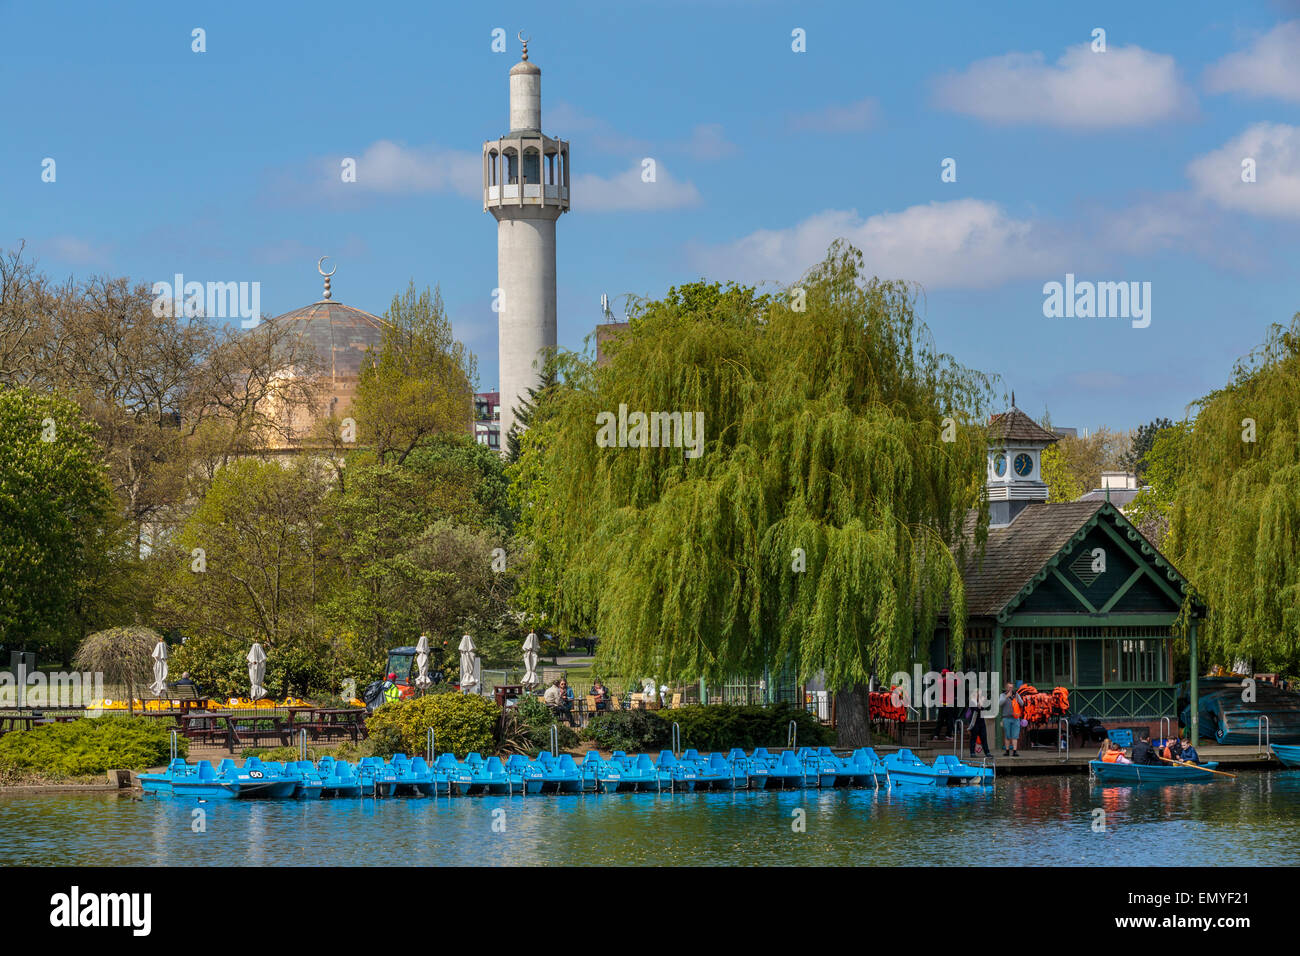 Le Regents Park lac de plaisance et de la mosquée centrale de Londres sur un ciel bleu ensoleillé jour , , Londres, Angleterre, Royaume-Uni Banque D'Images